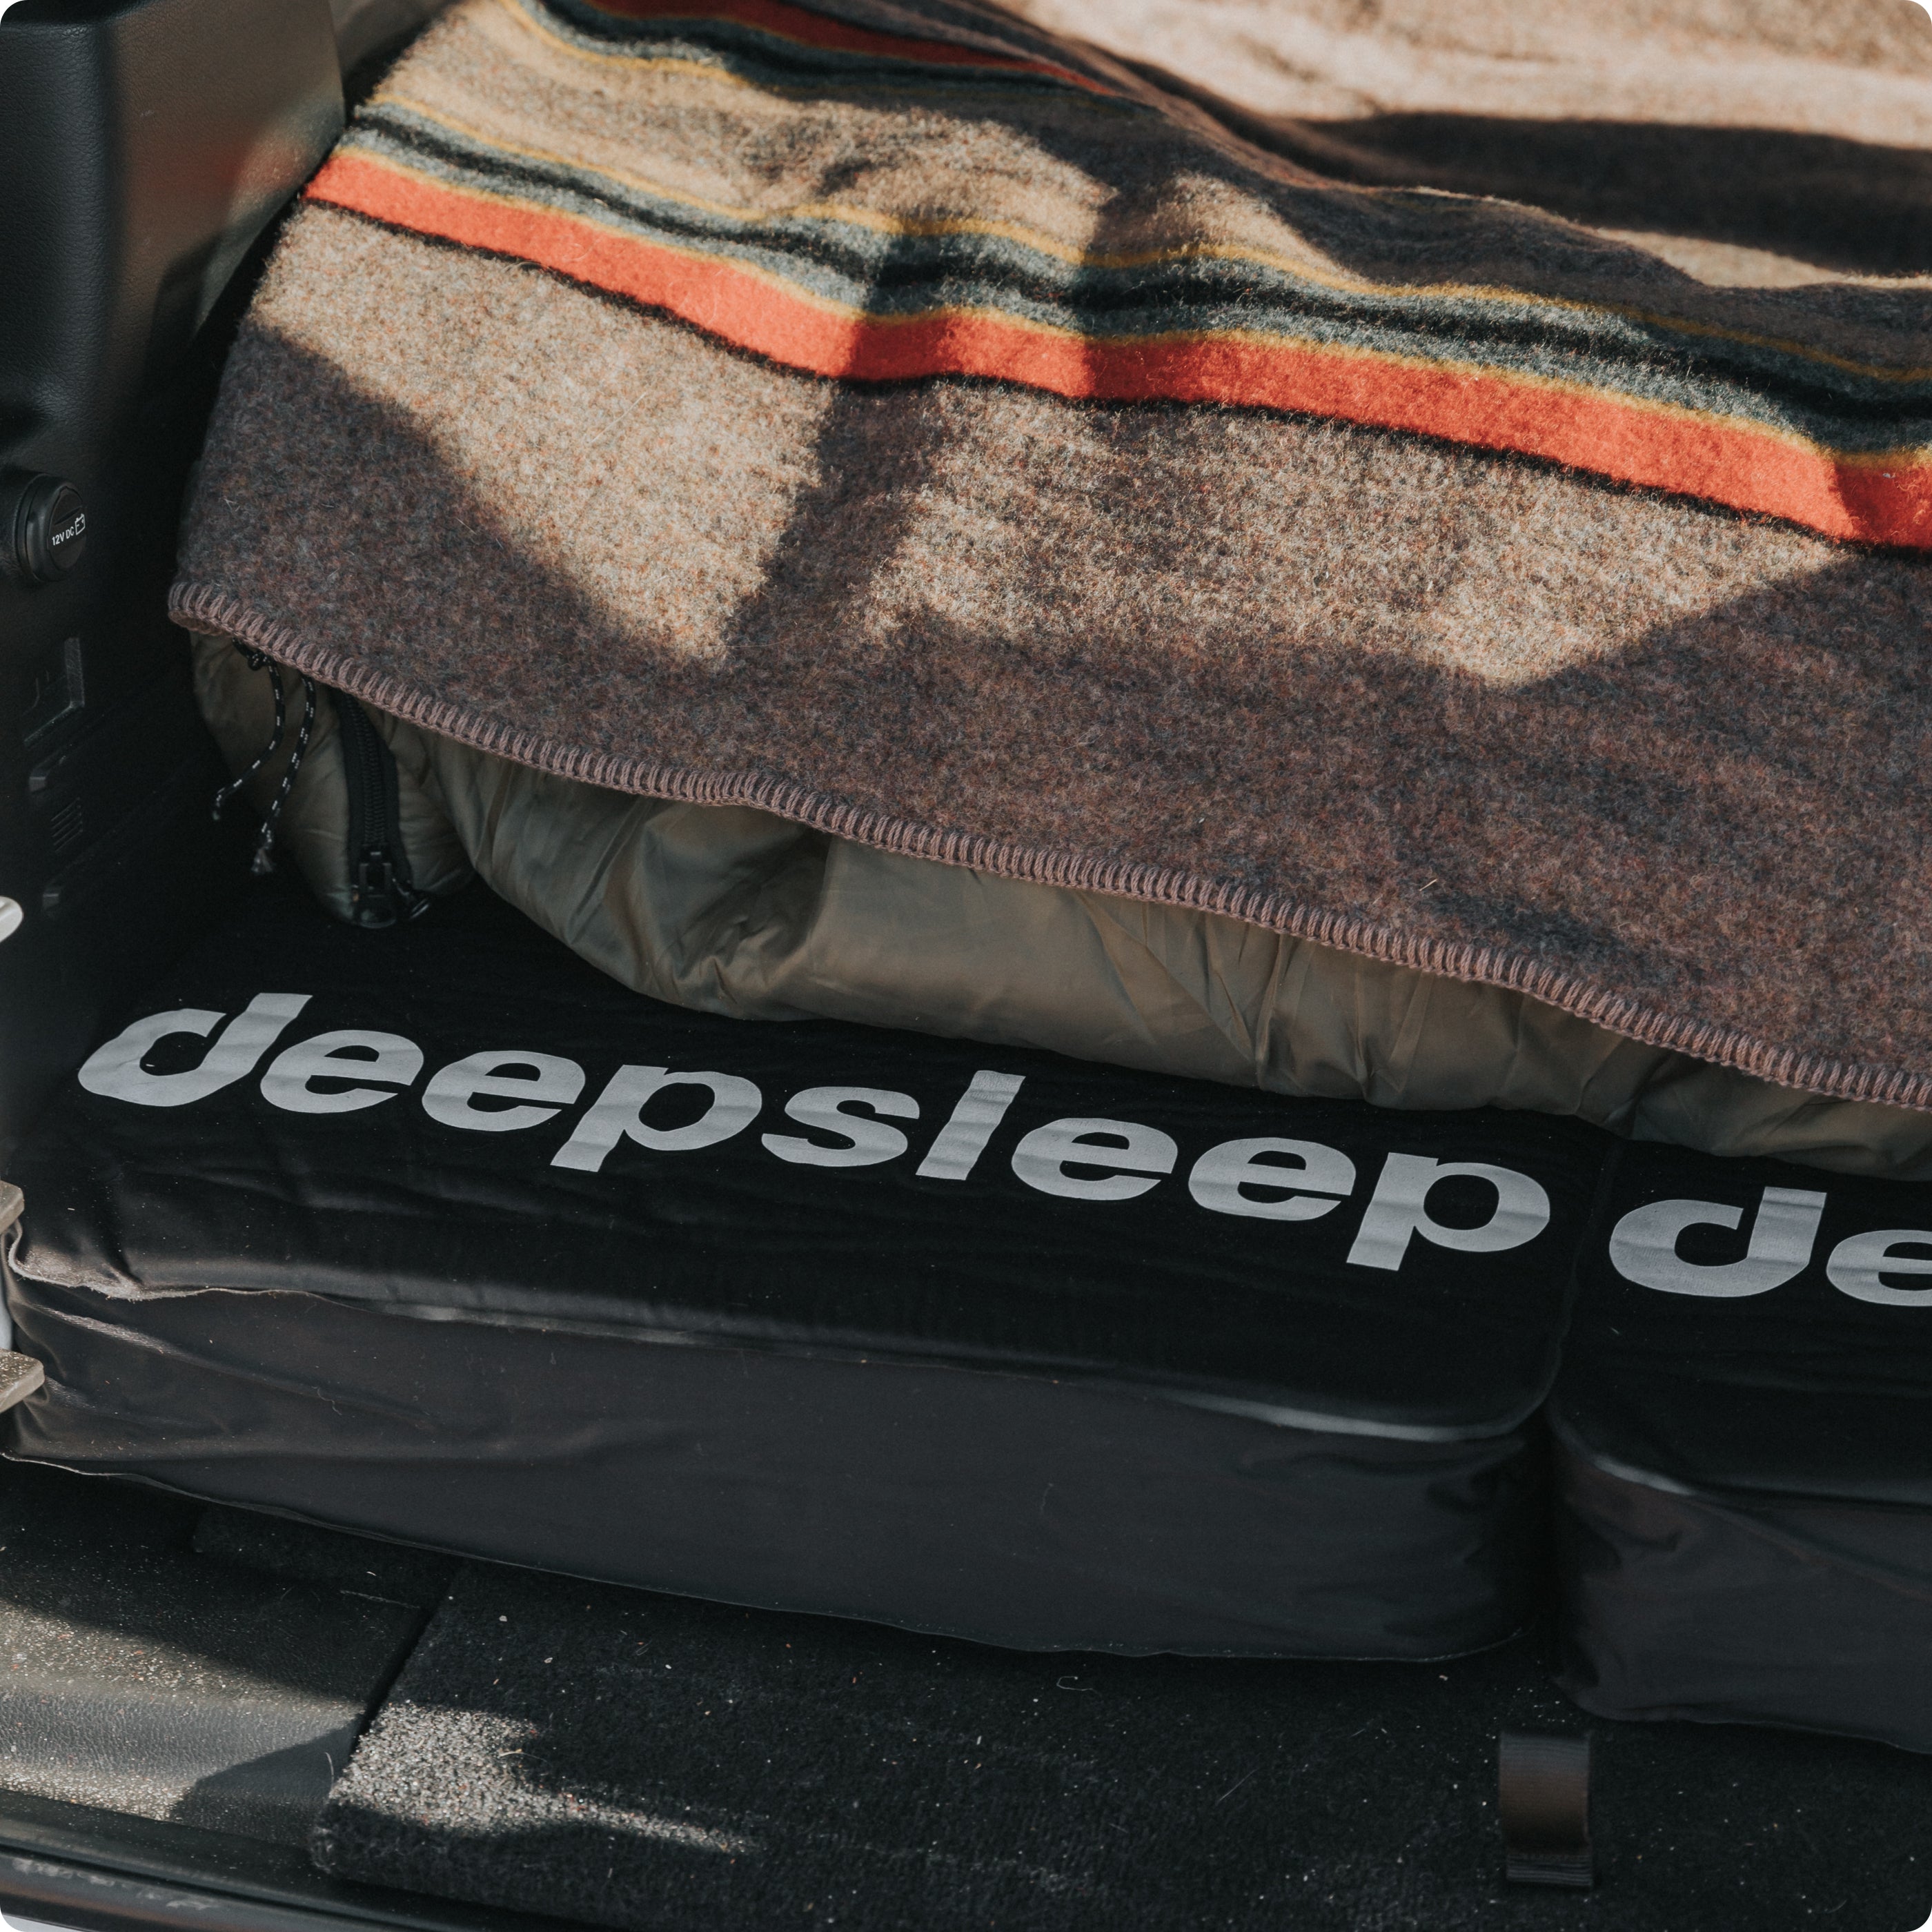 Deepsleep Solo Camping Mat – Deepsleep Overland